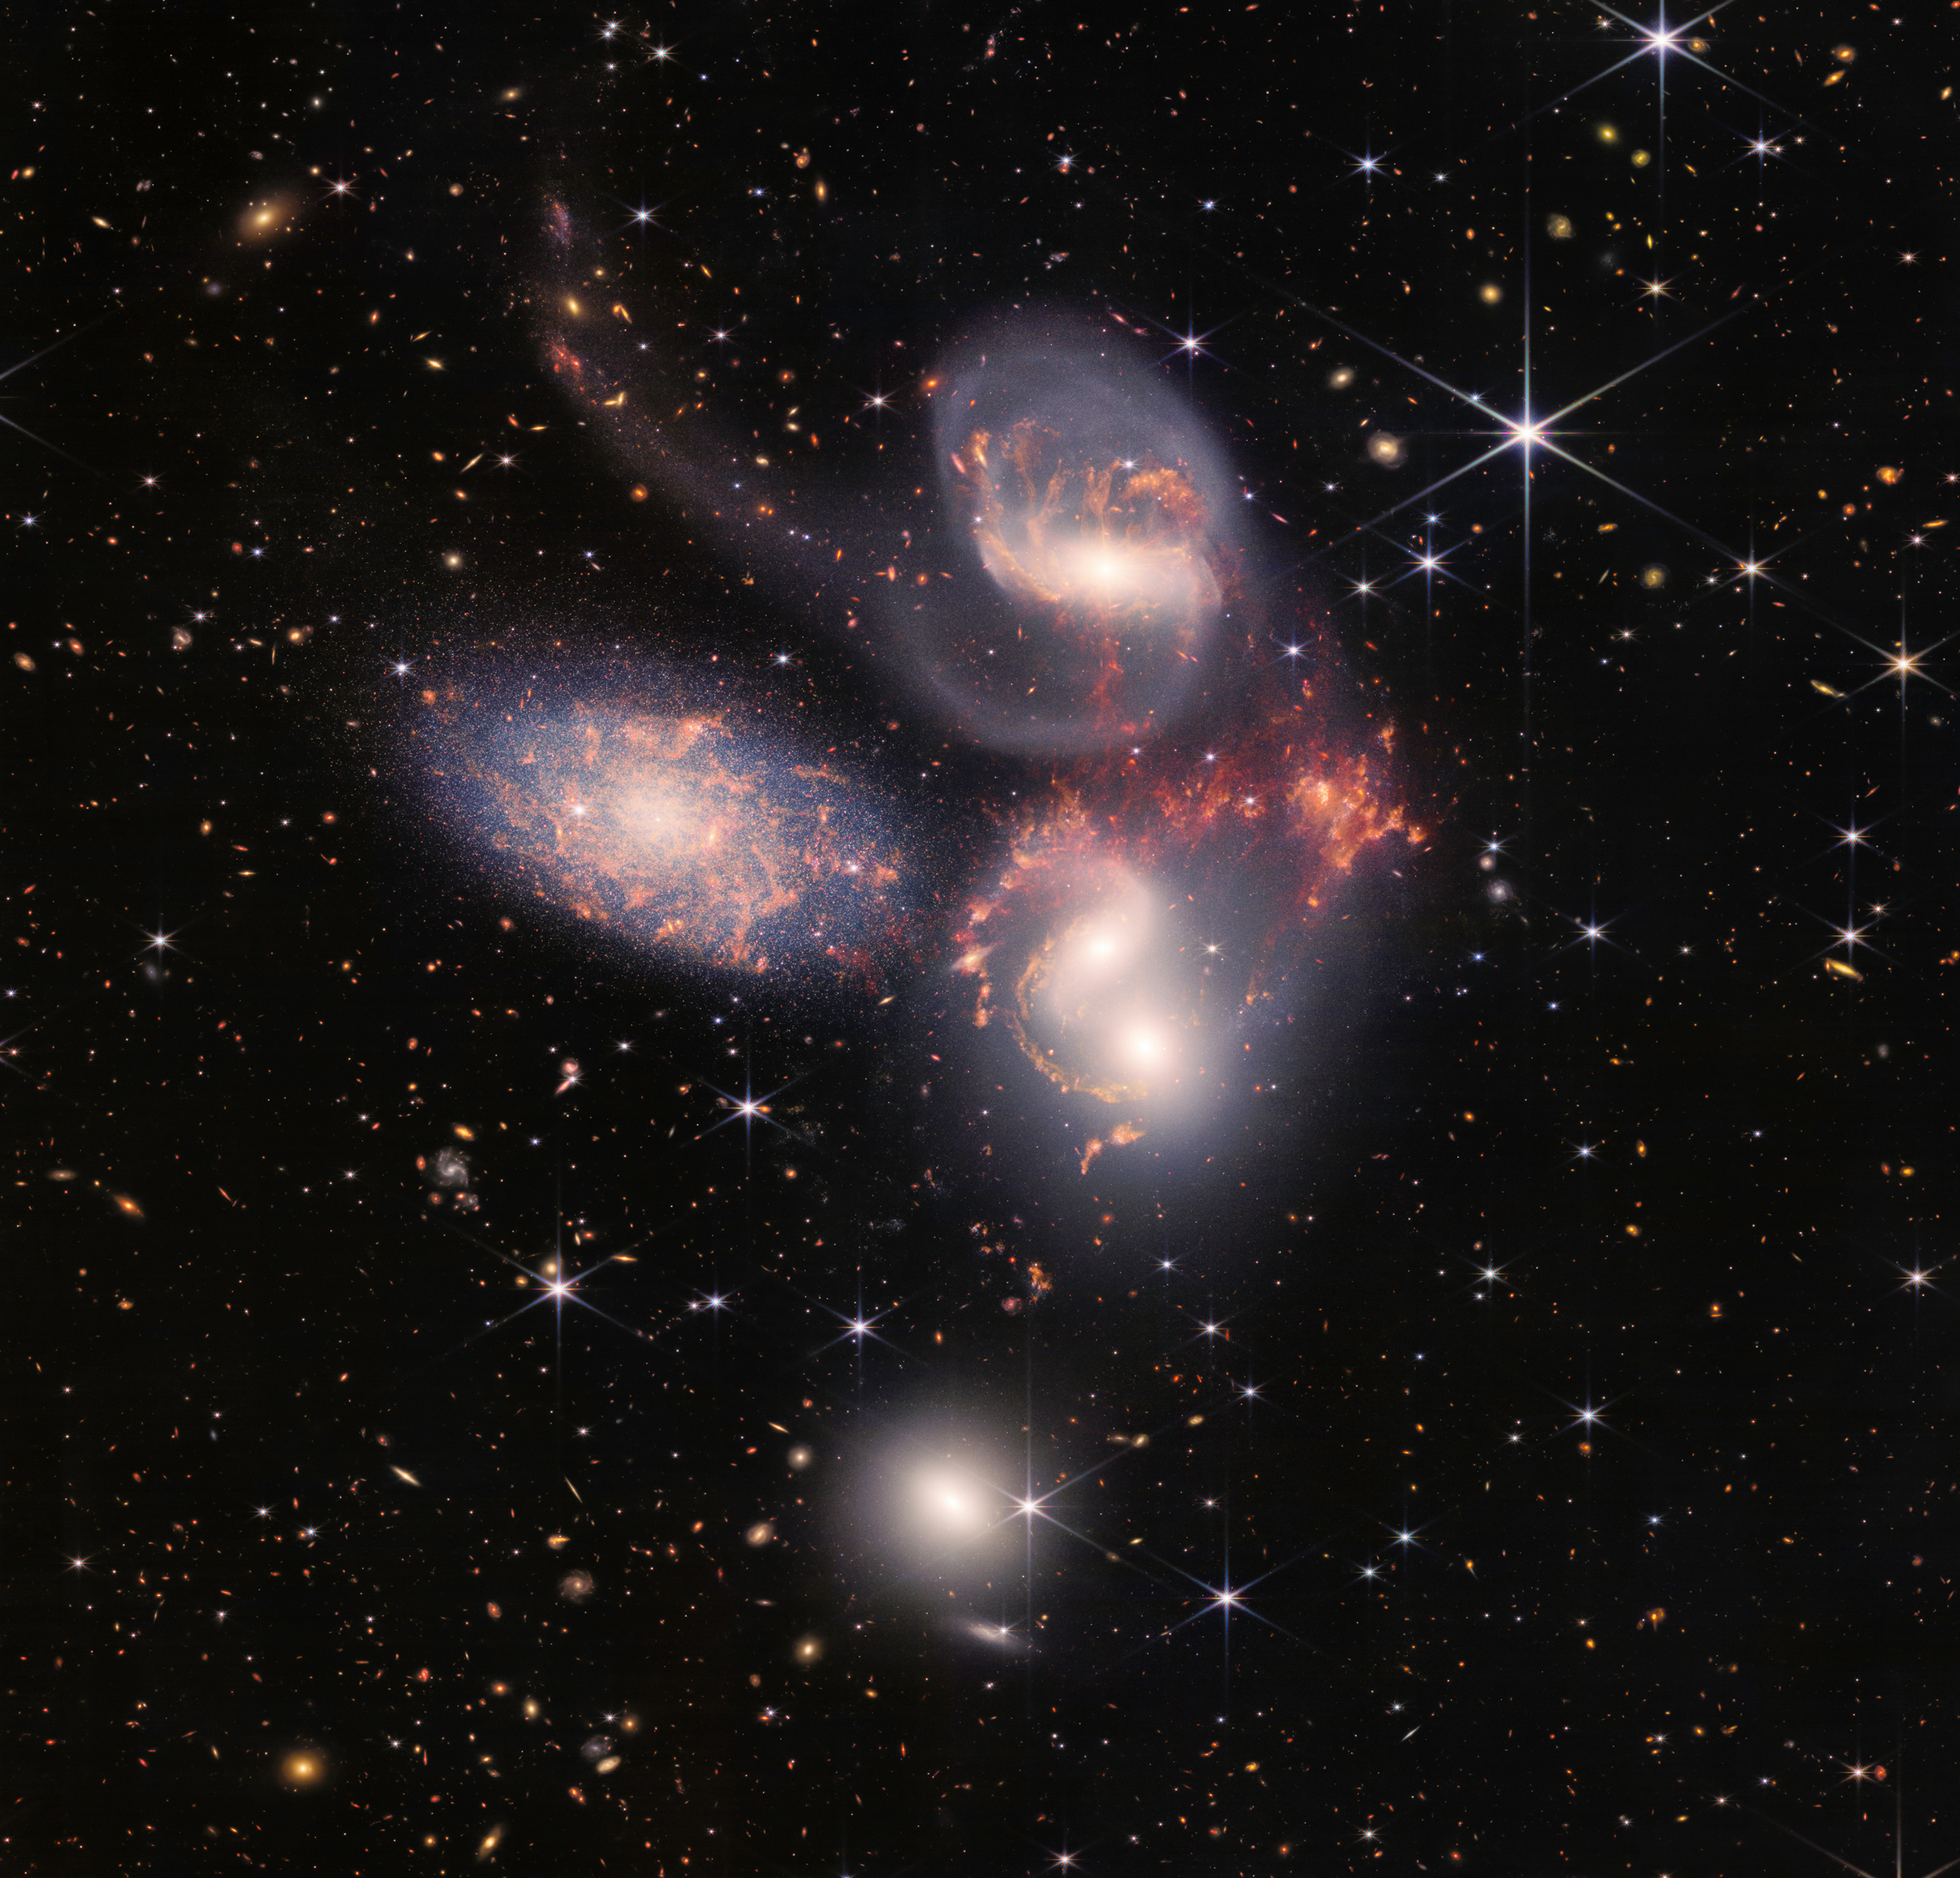 2s-main_image_galaxies_stephans_quintet_sq_nircam_miri_final-5mb.jpg